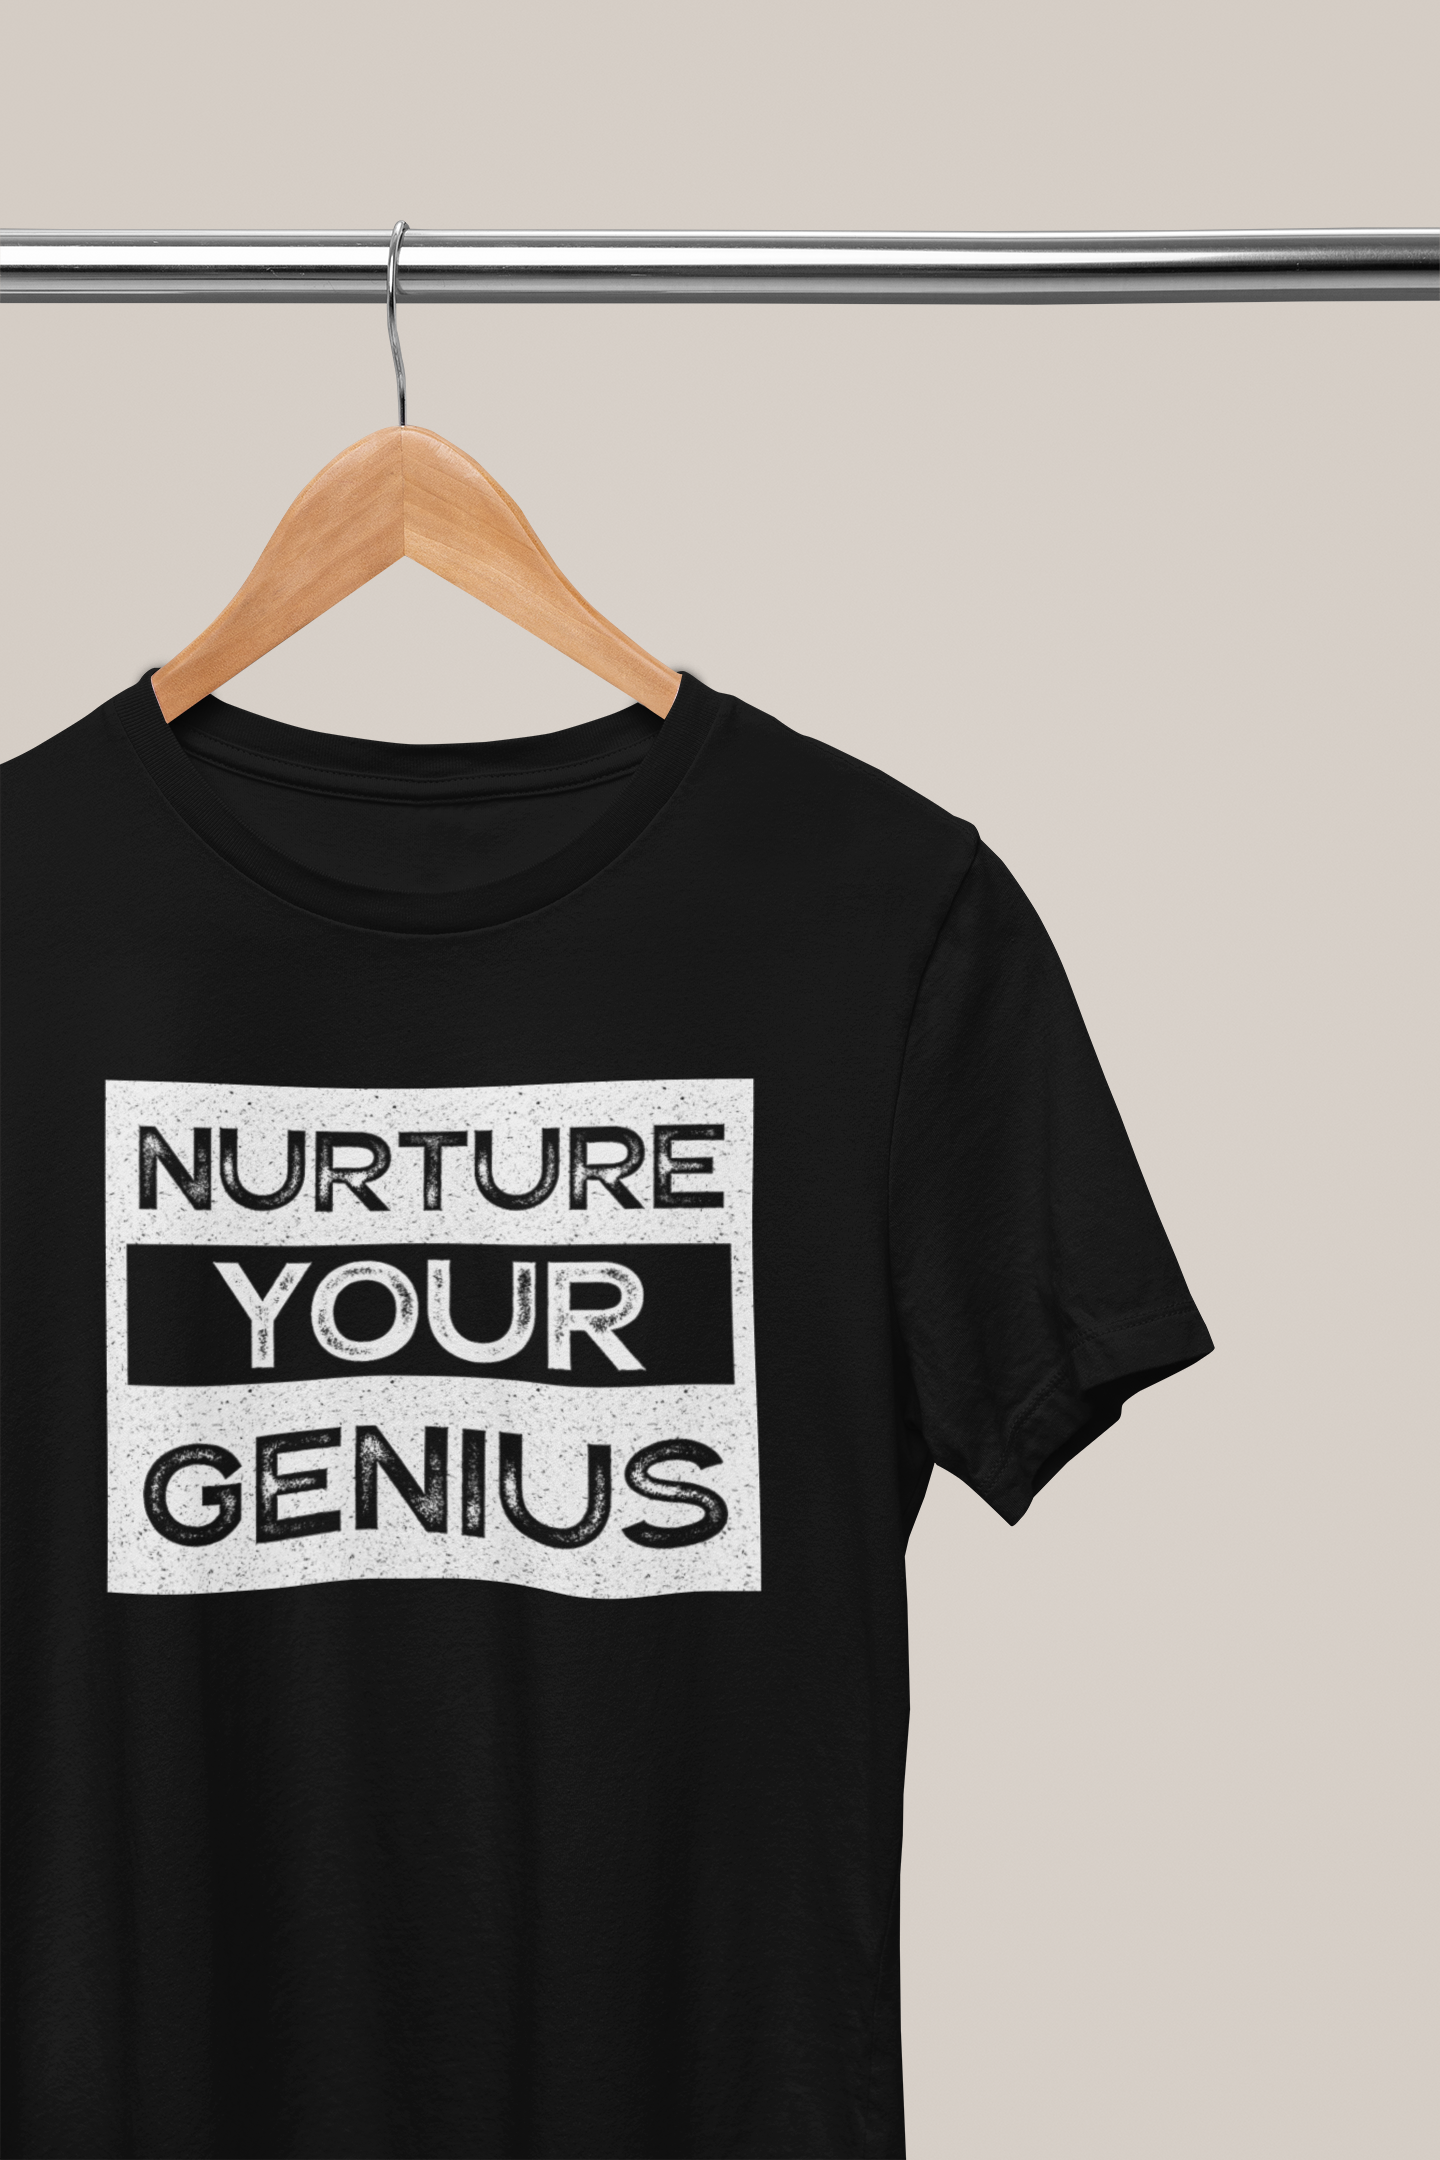 Nurture Your Genius, Hoodies, Sweatshirts, Tees, and Mugs